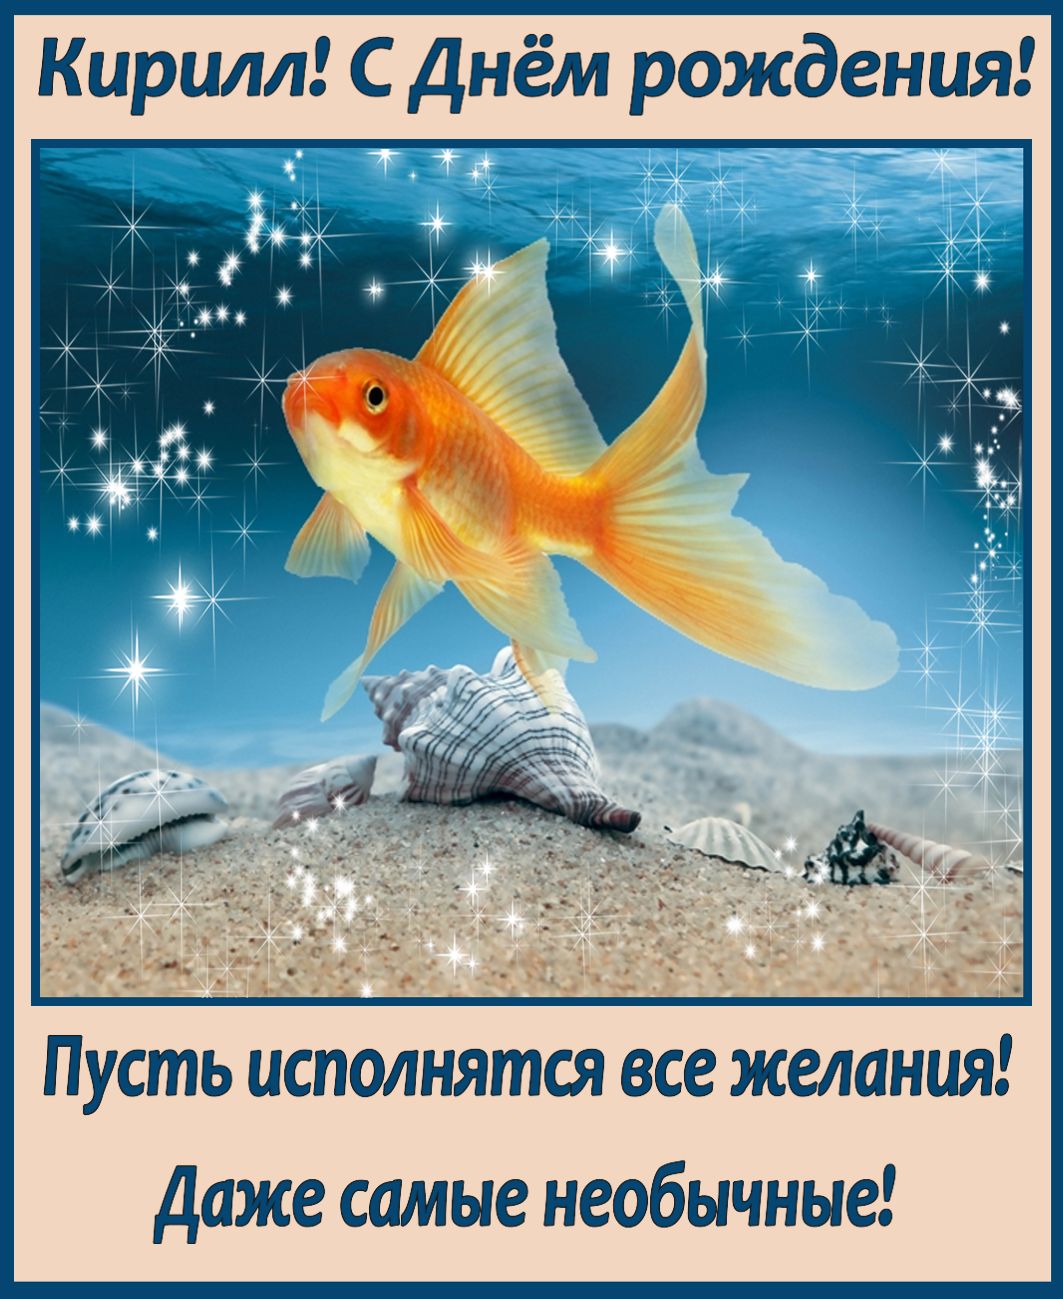 Пускай желания сбываются. Открытка исполнения всех желаний. Золотая рыбка. Рыбка исполнения желаний. Золотая рыбка исполнение желаний.